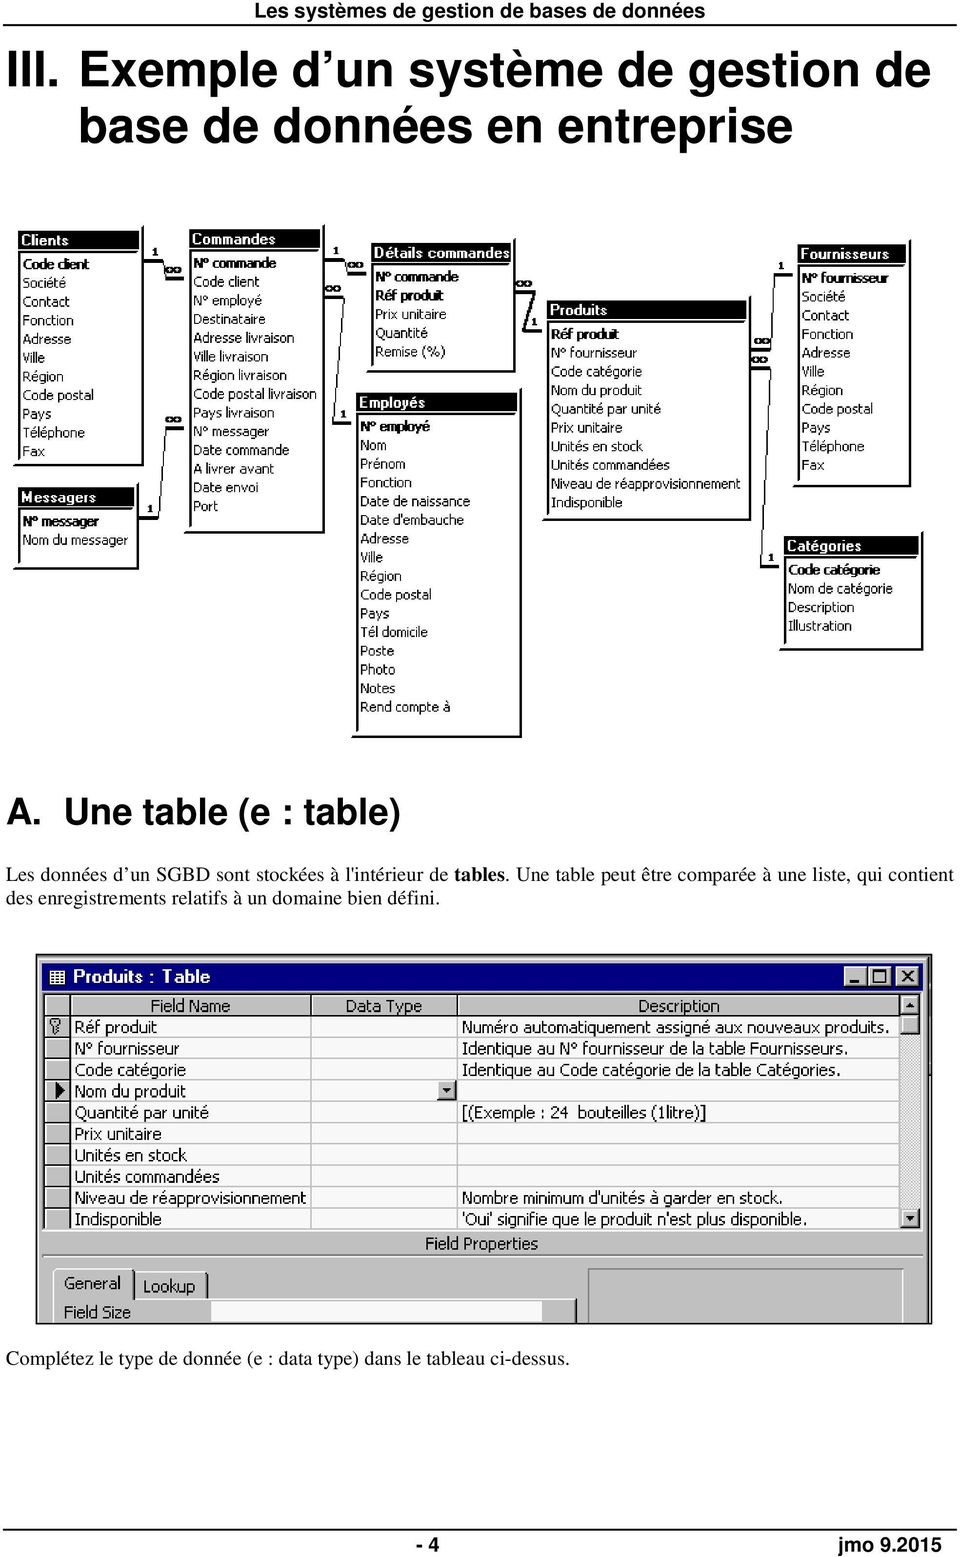 Une table peut être comparée à une liste, qui contient des enregistrements relatifs à